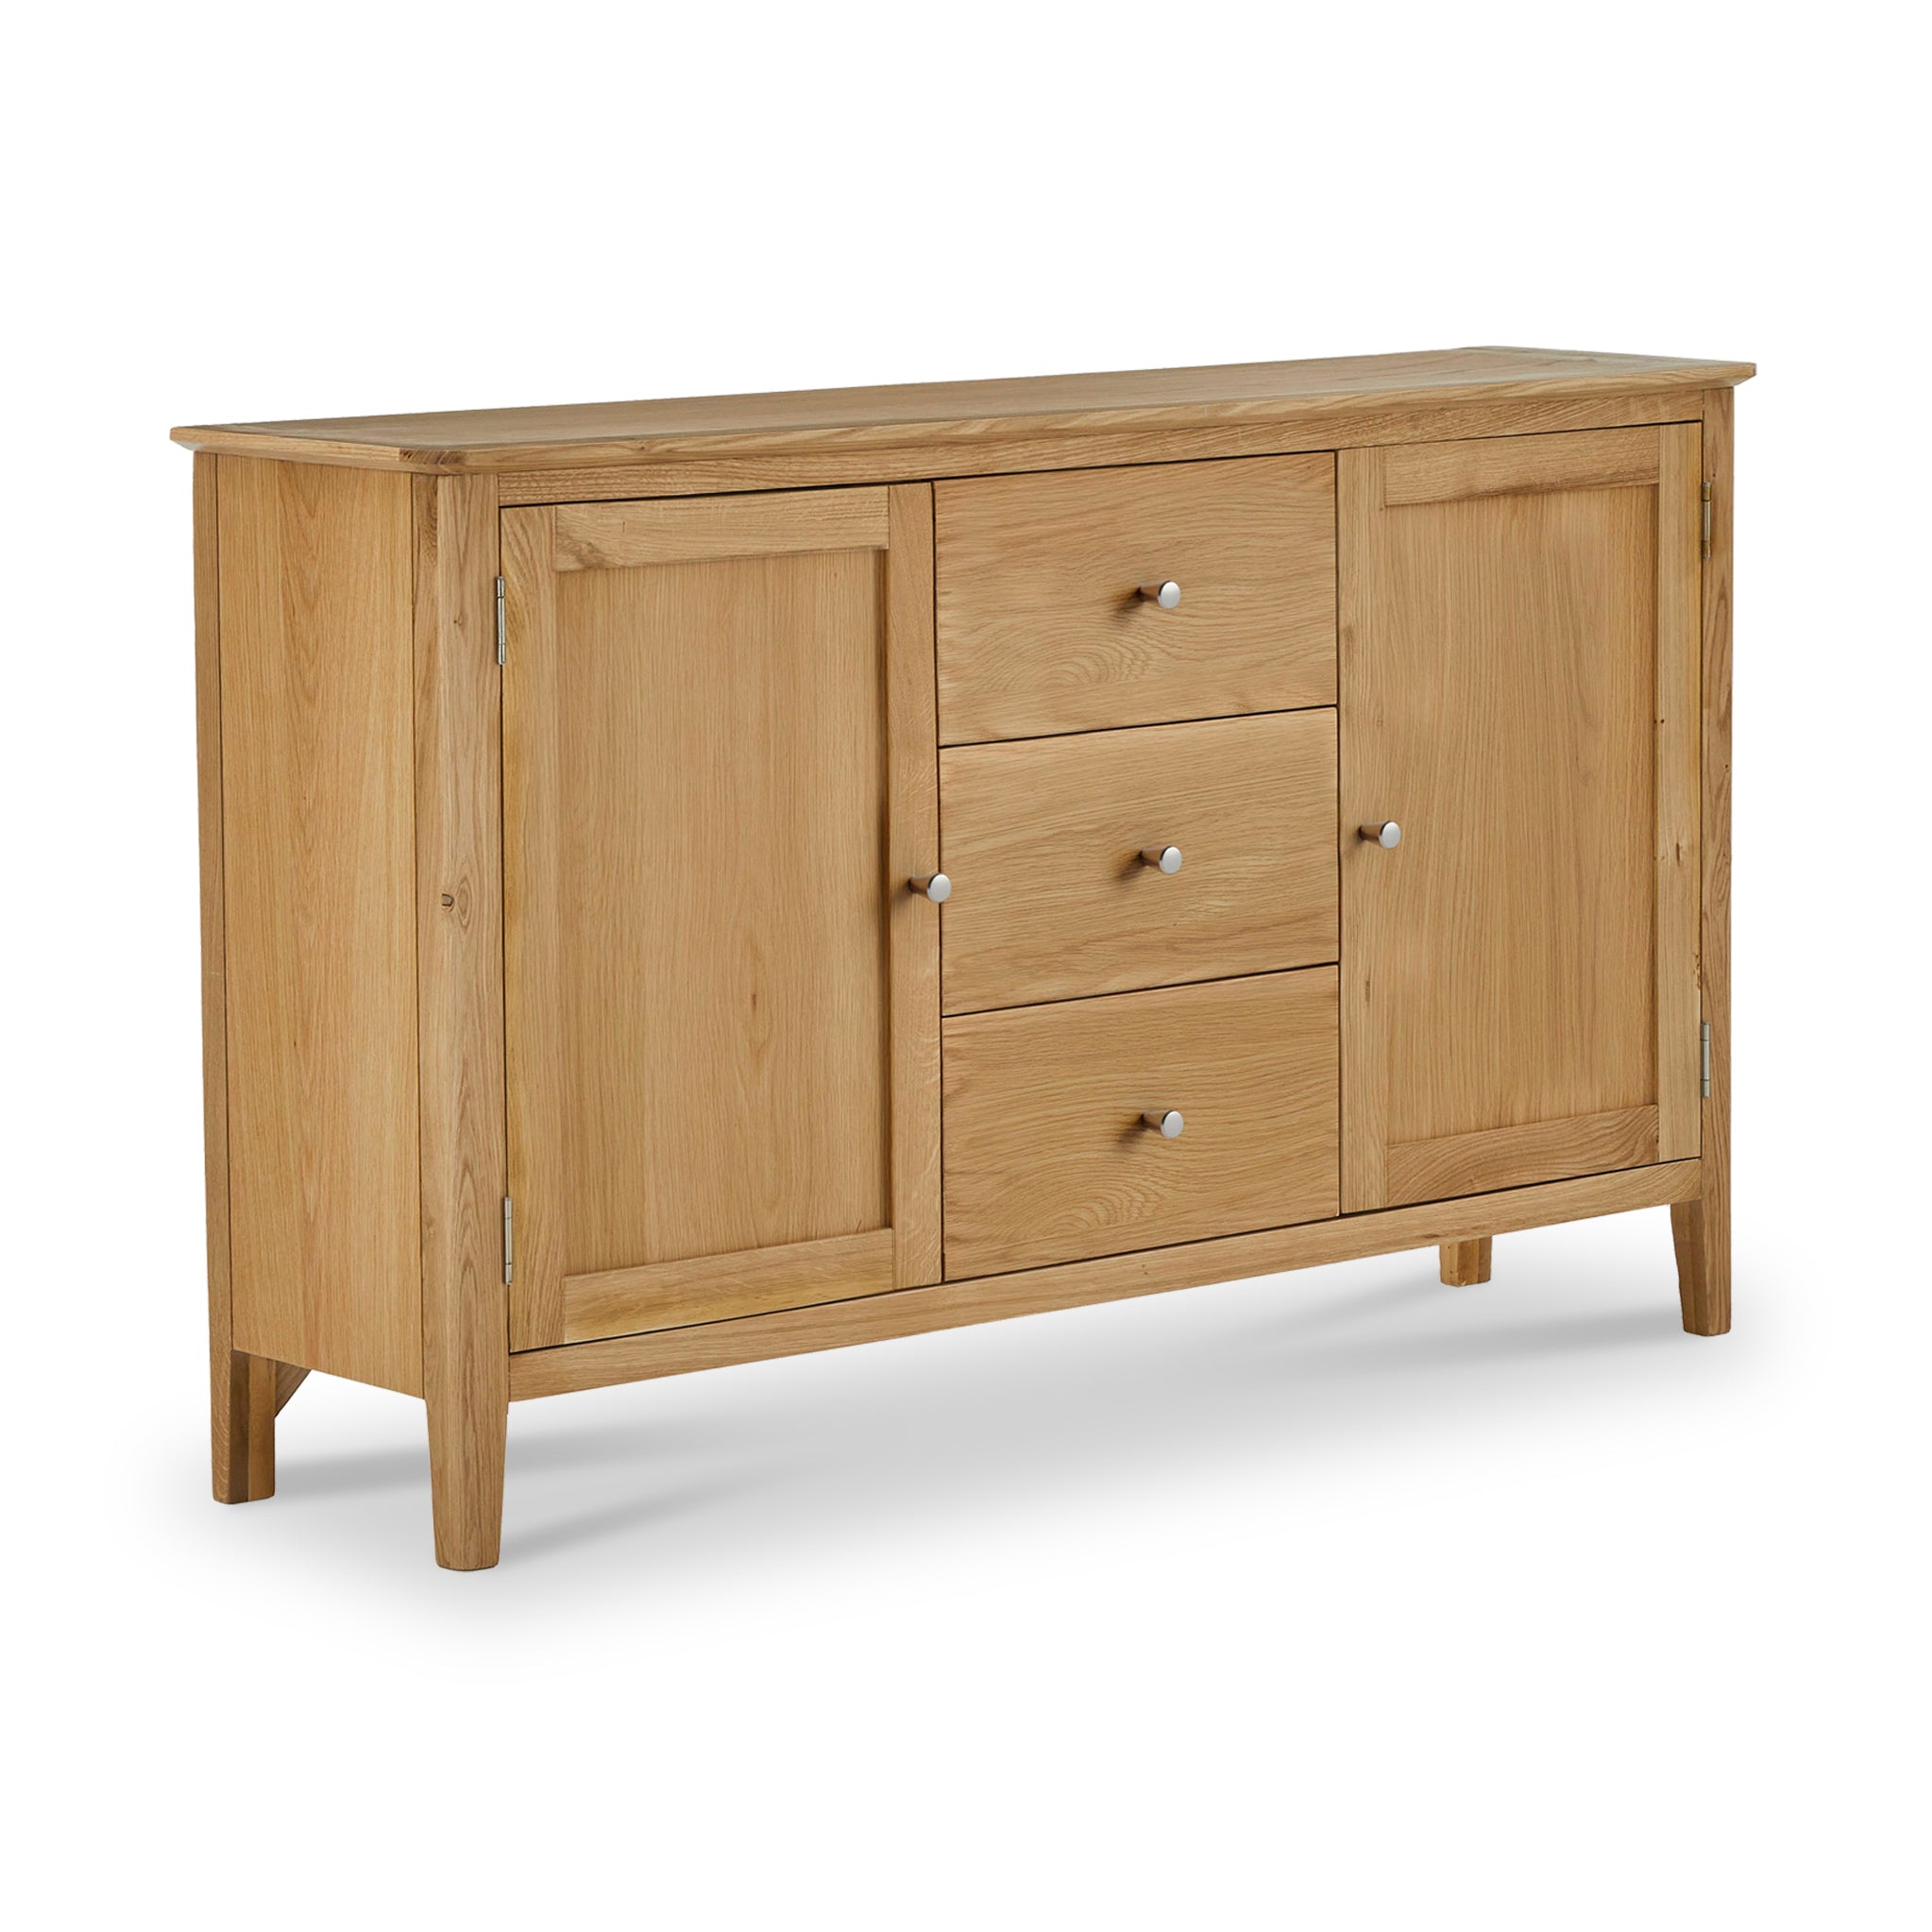 Saxon Natural Oak Wood Large Sideboard Cabinet